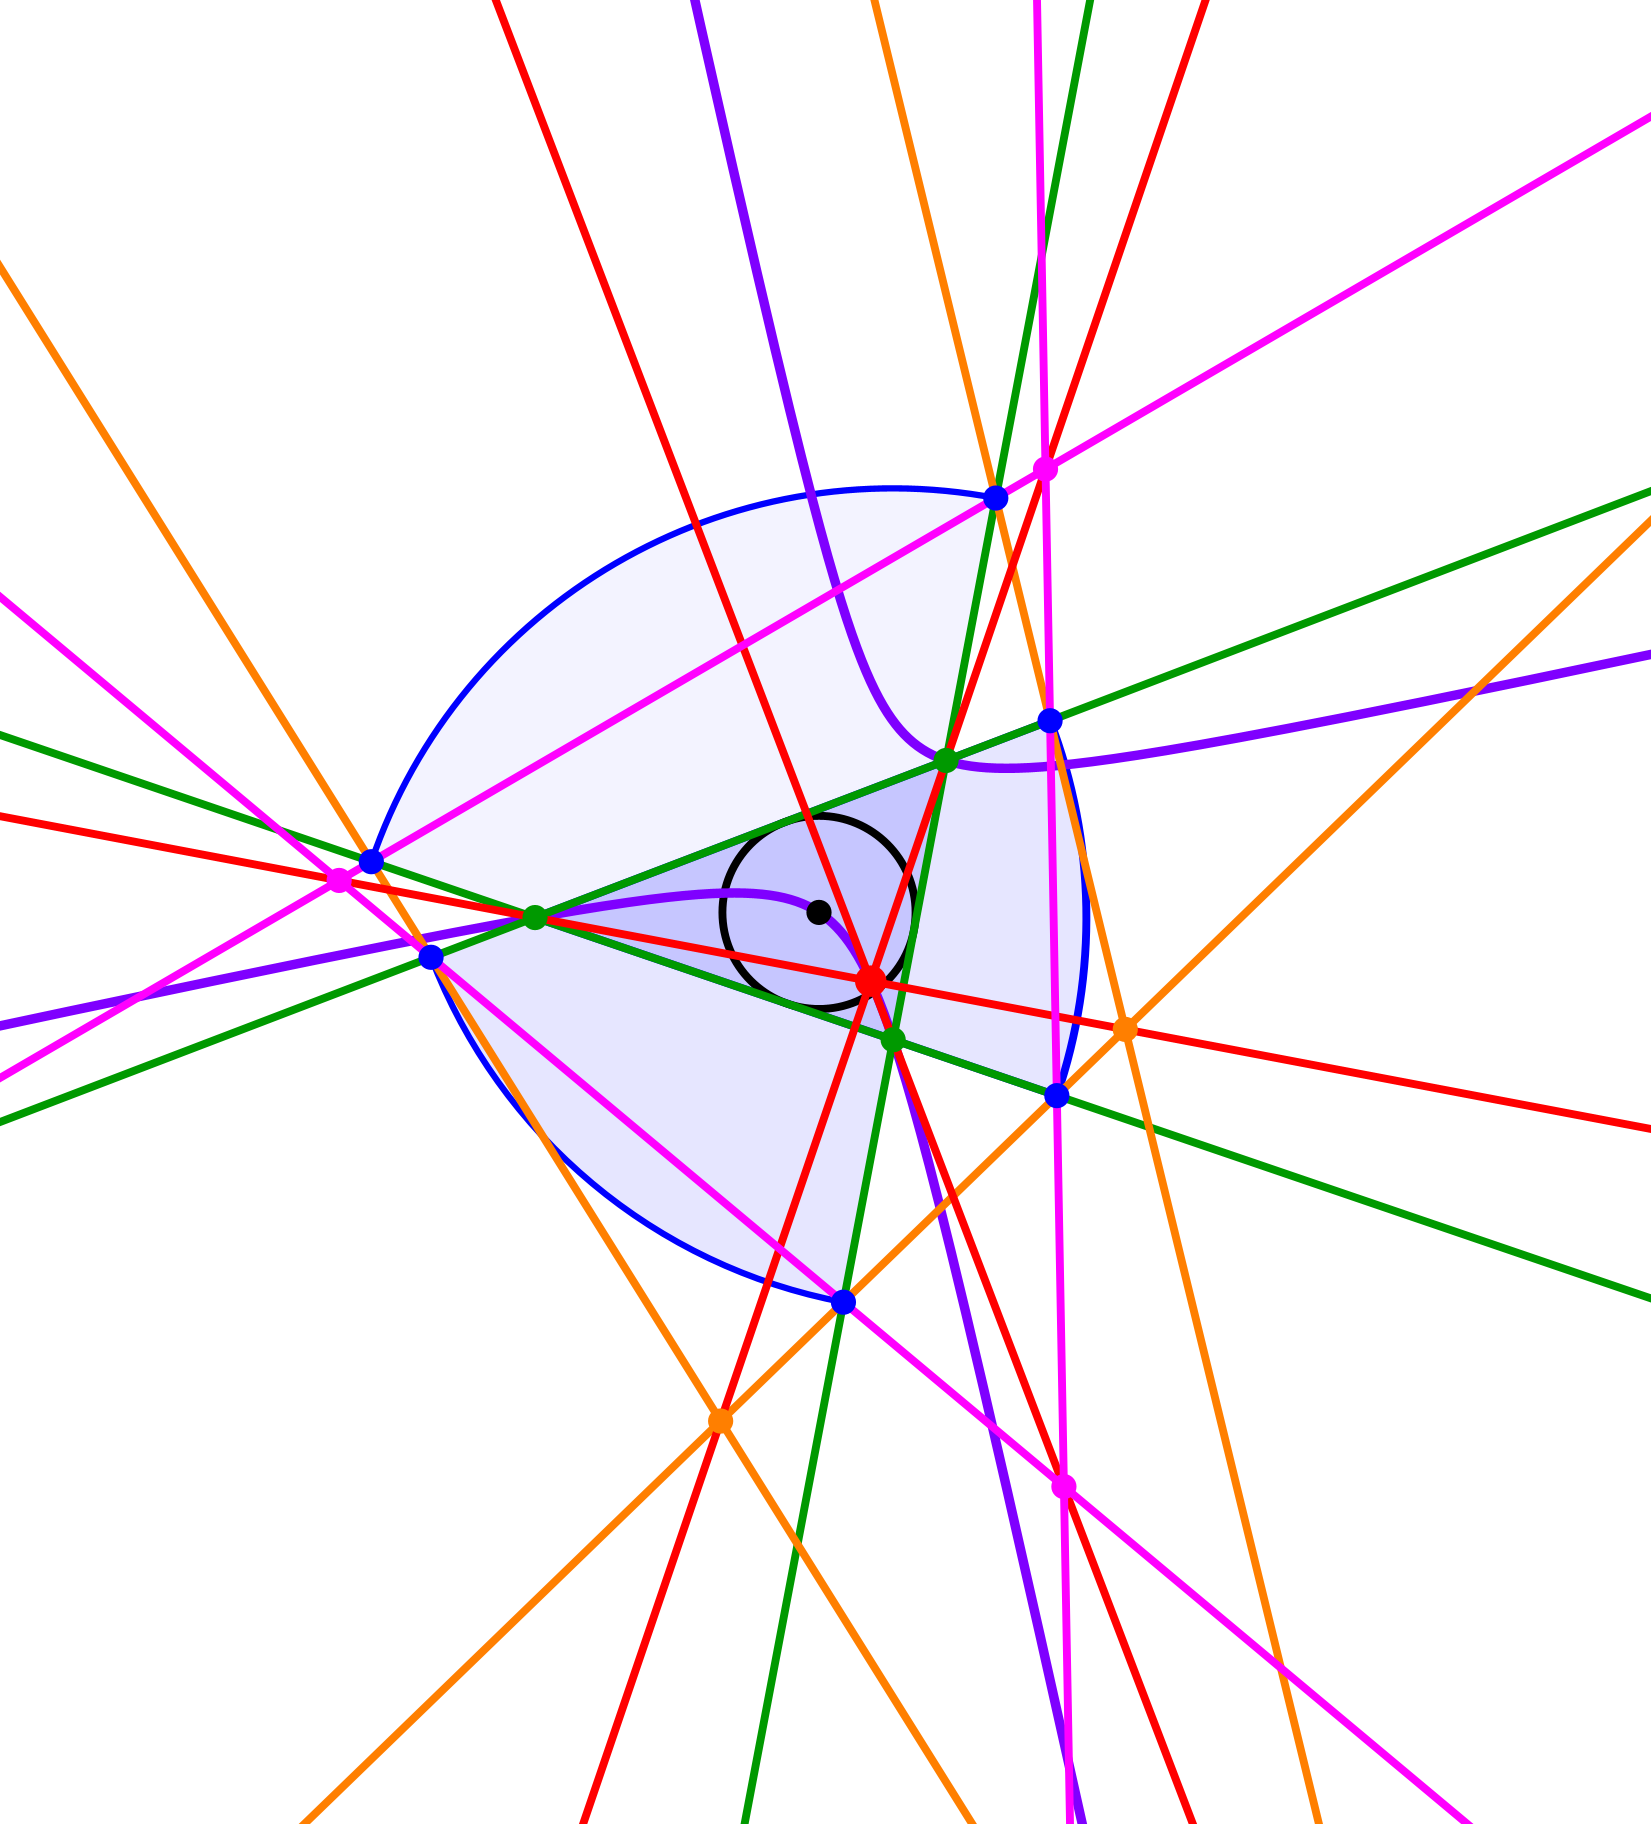 Ein Bild, das Farbigkeit, Reihe, lila, Laser enthält.

Automatisch generierte Beschreibung